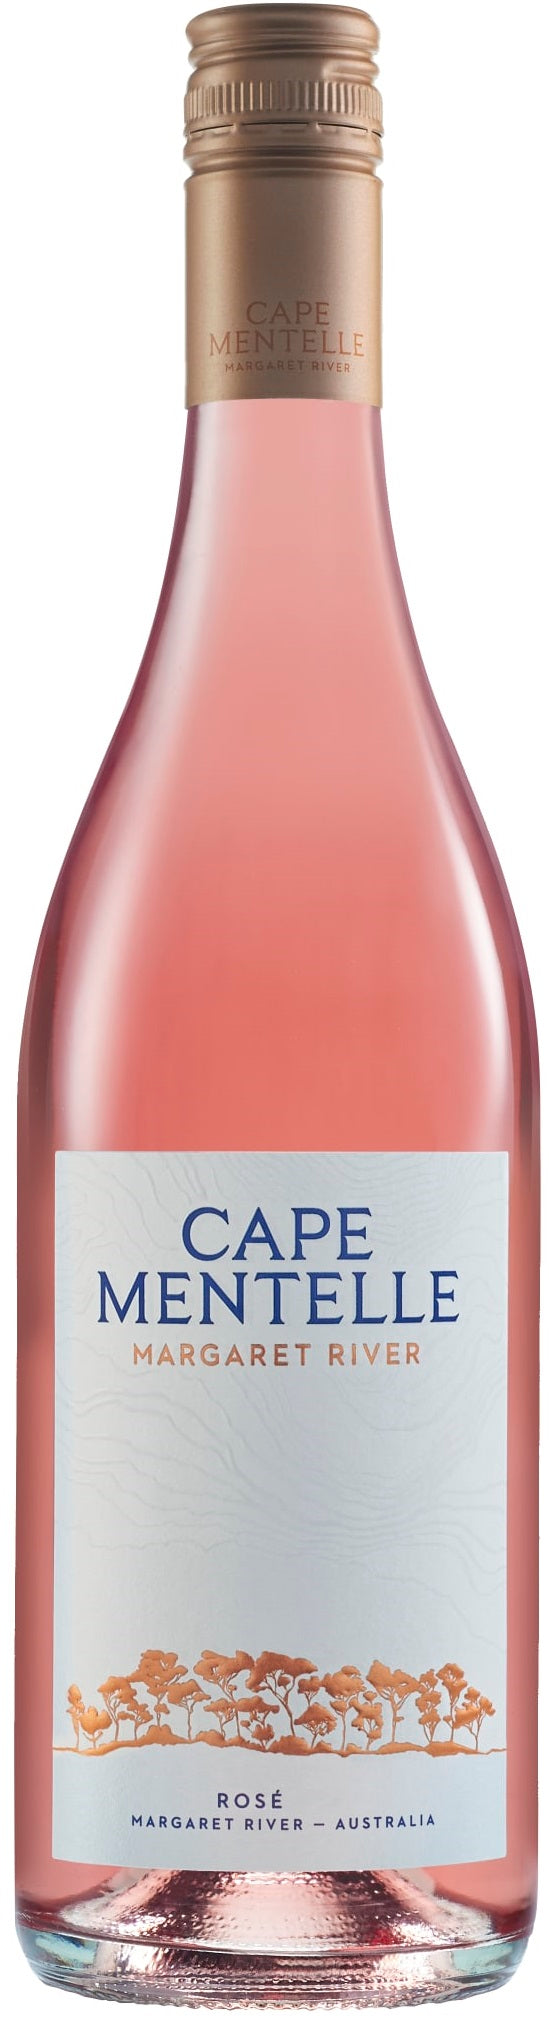 Cape Mentelle Rose 2019